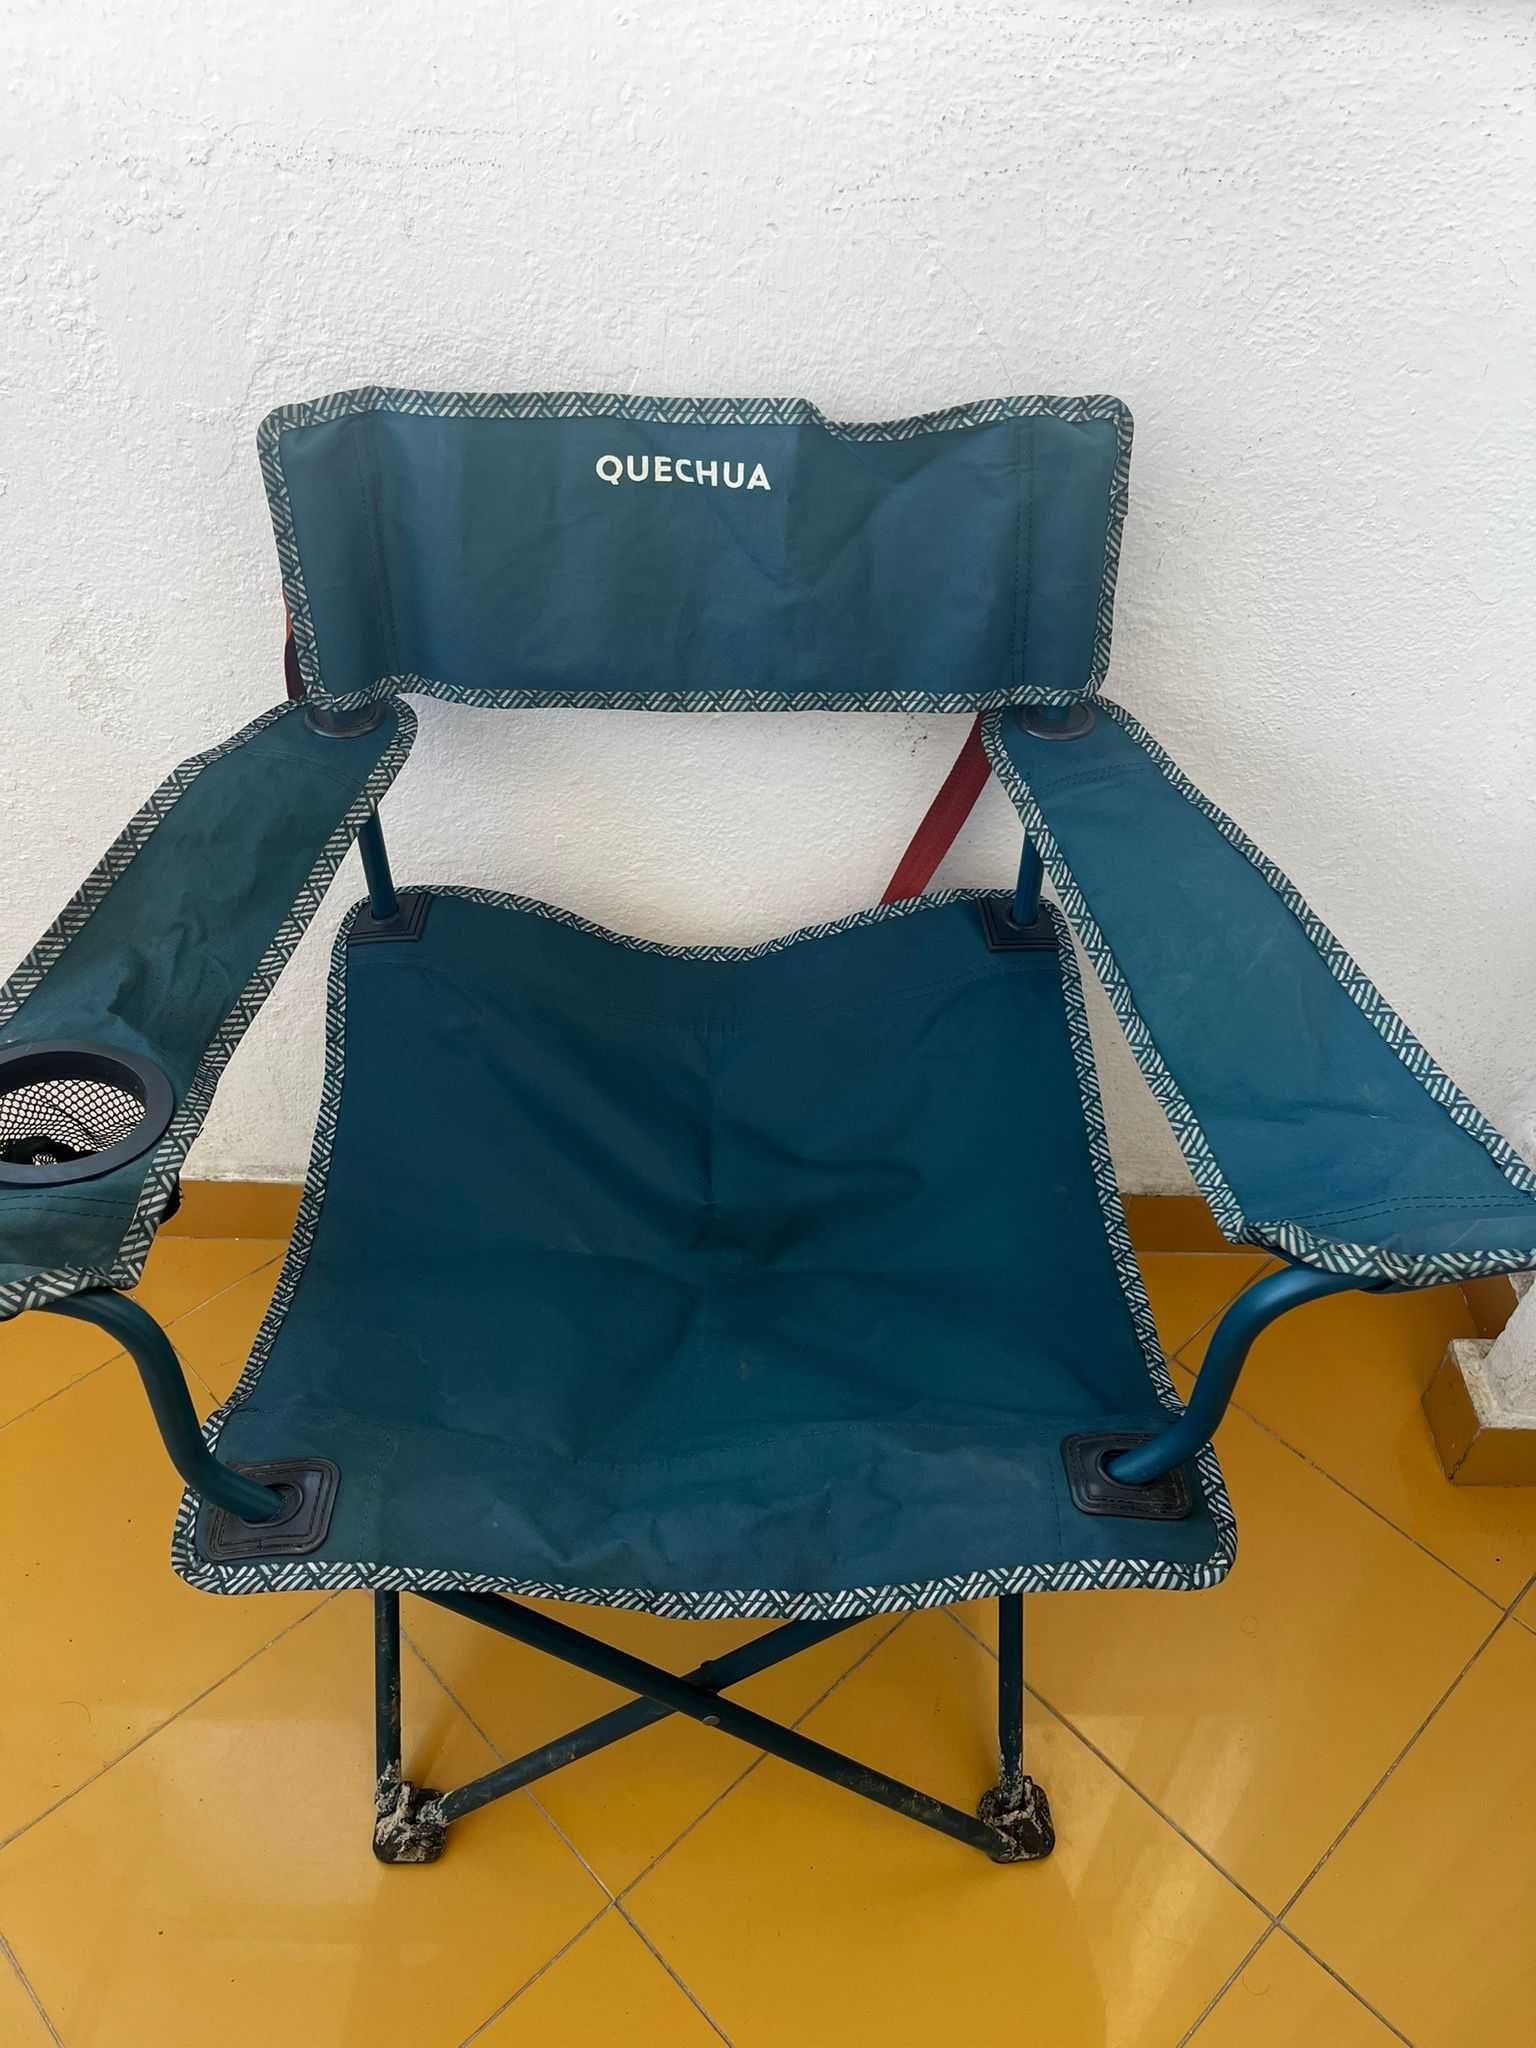 Kit de Campismo - Tenda, colchão, cadeira, geladeira, mesa e bomba